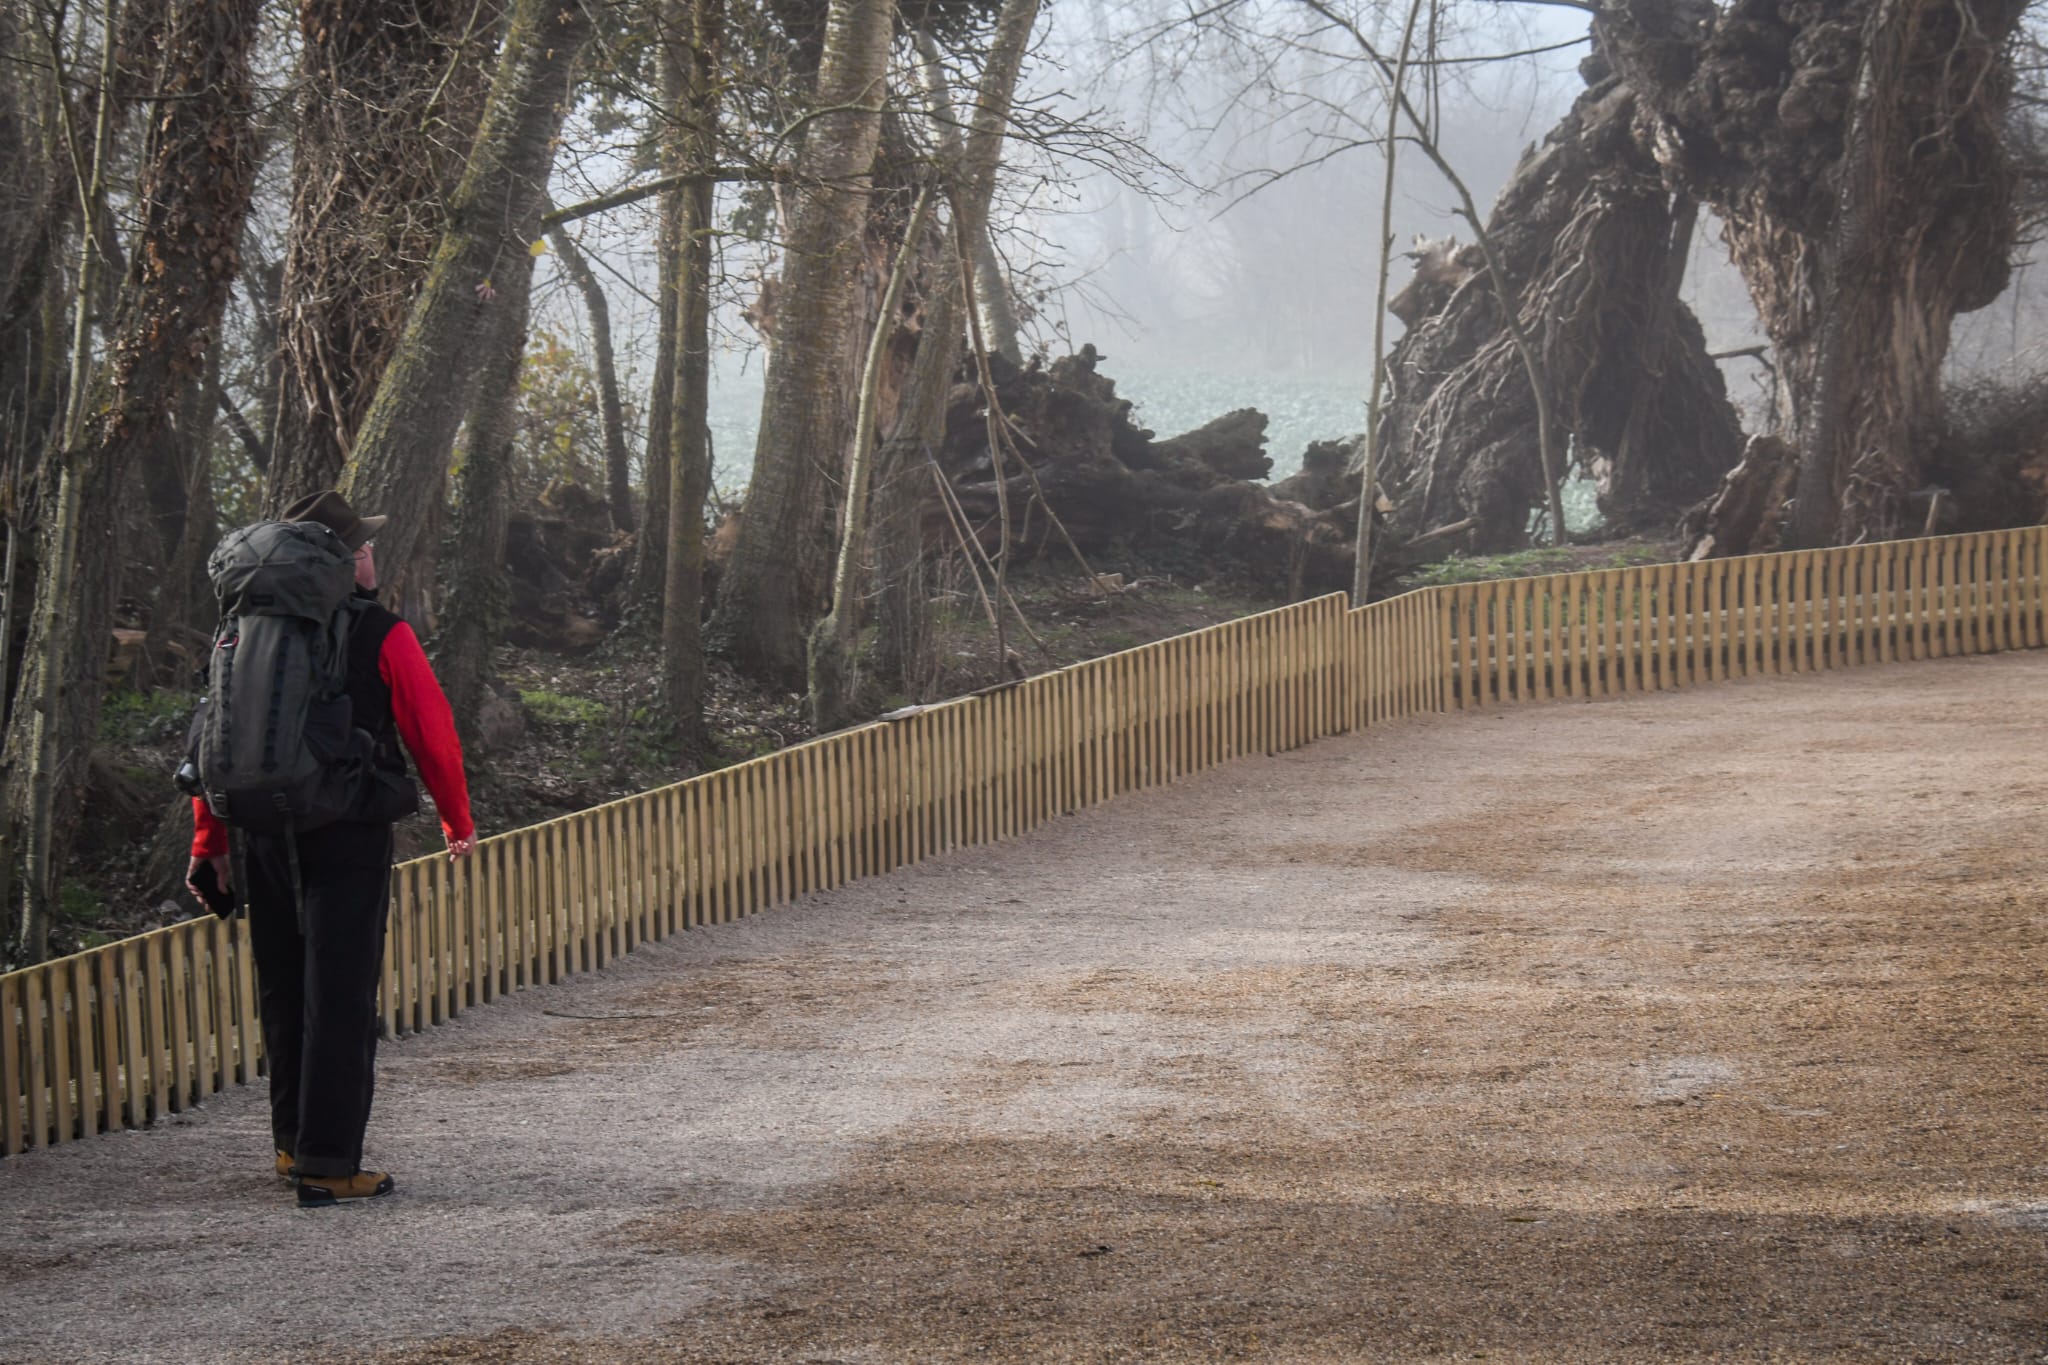 Un peregrino camina junto al nuevo vallado del Monasterio de San Antón, una de las paradas más emblemáticas del Camino de Santiago a su paso por Burgos